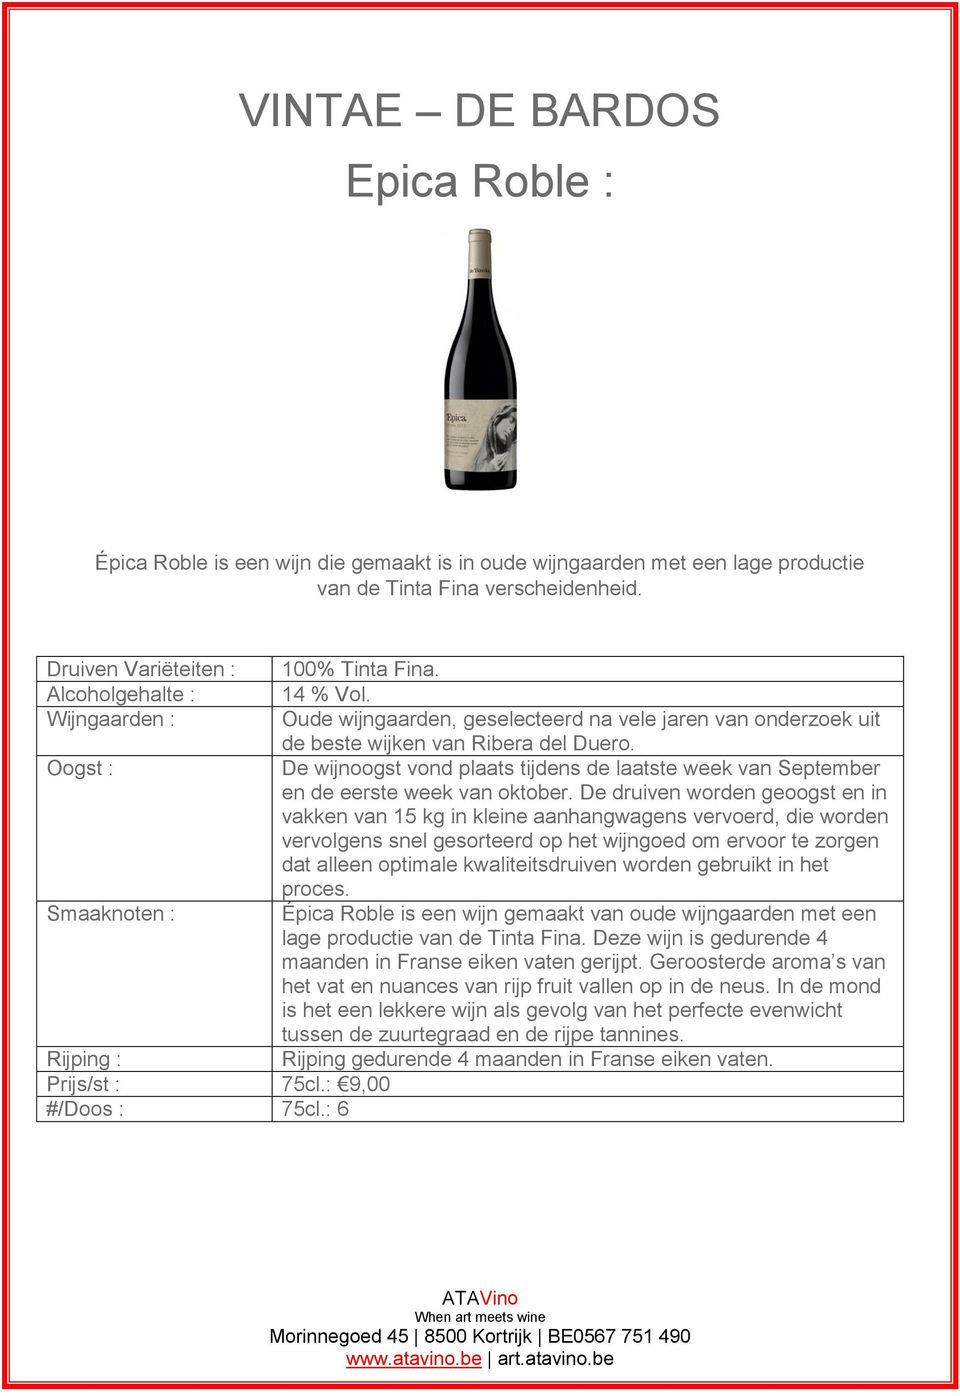 Épica Roble is een wijn gemaakt van oude wijngaarden met een lage productie van de Tinta Fina. Deze wijn is gedurende 4 maanden in Franse eiken vaten gerijpt.